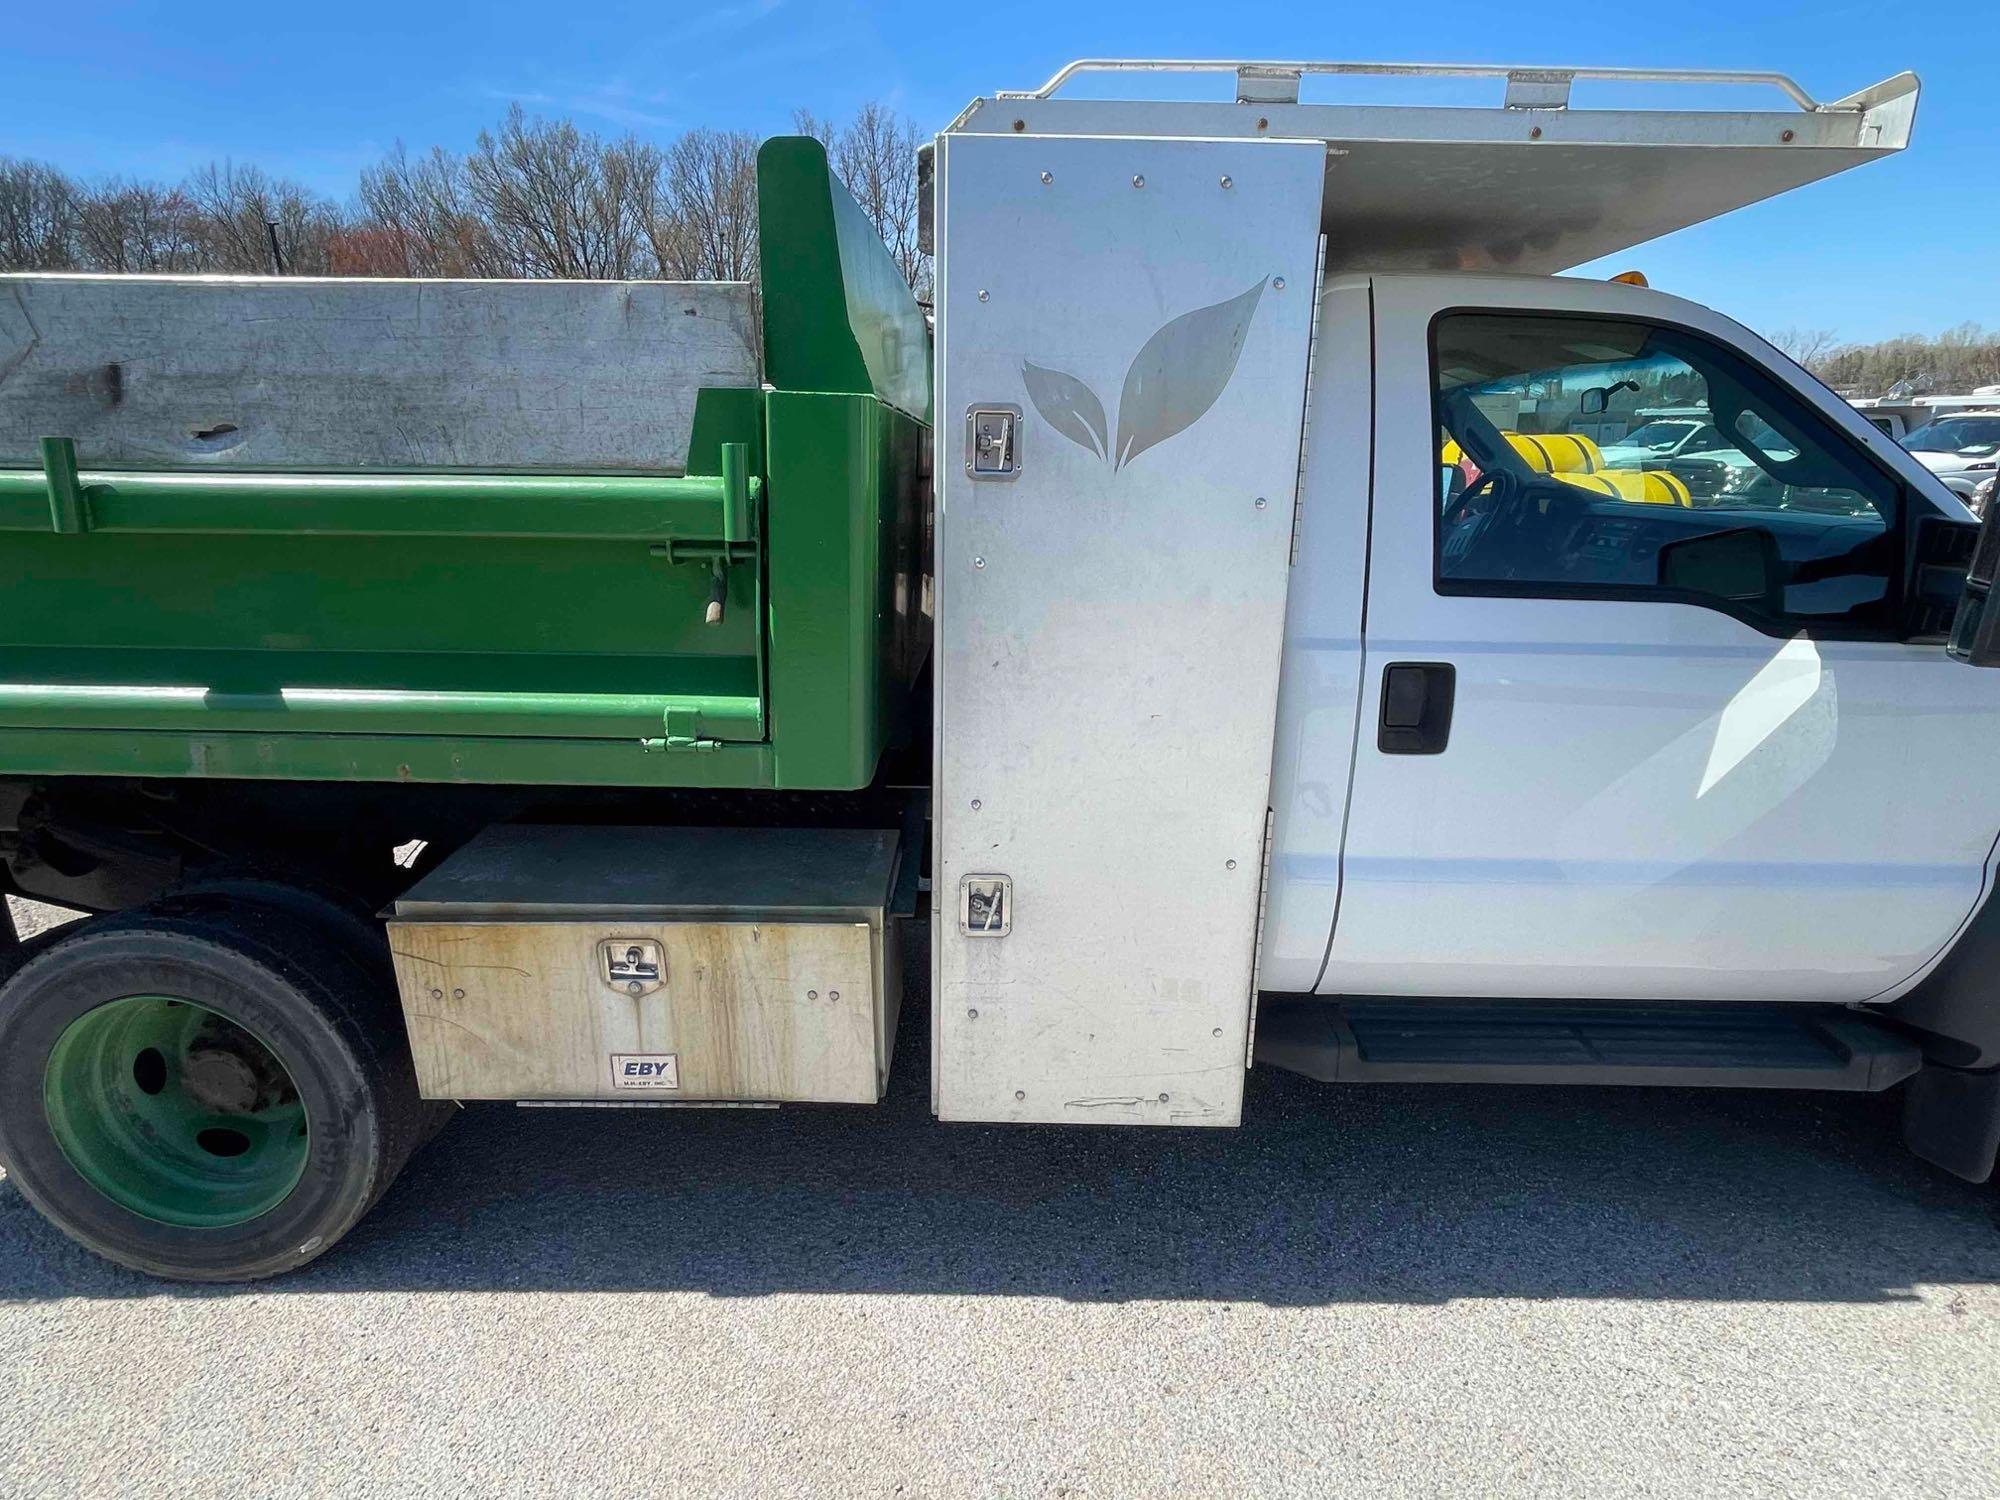 2014 Ford F-550 Dump Truck 4x4 with alum toolbox; 83,278 mi.